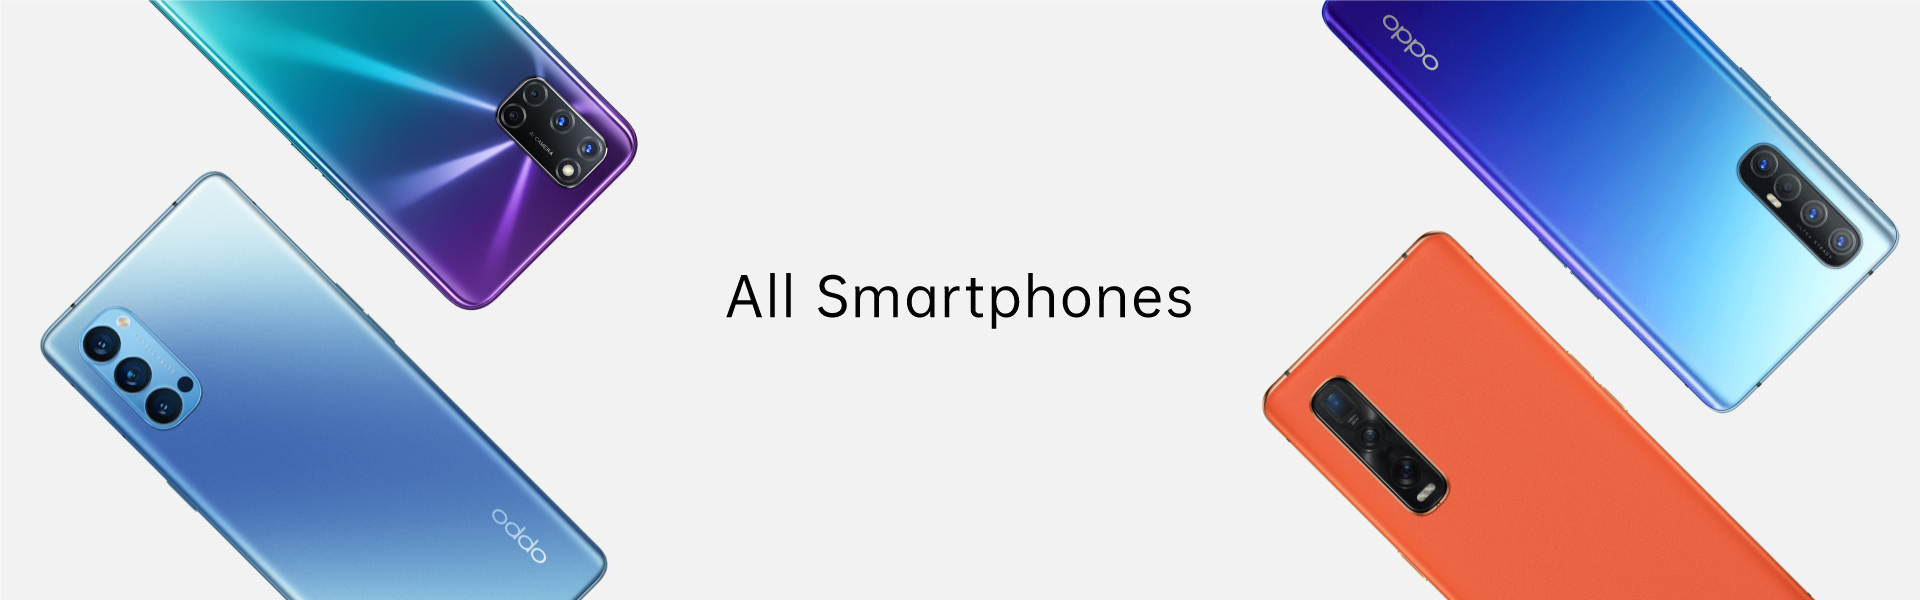 All Smartphones